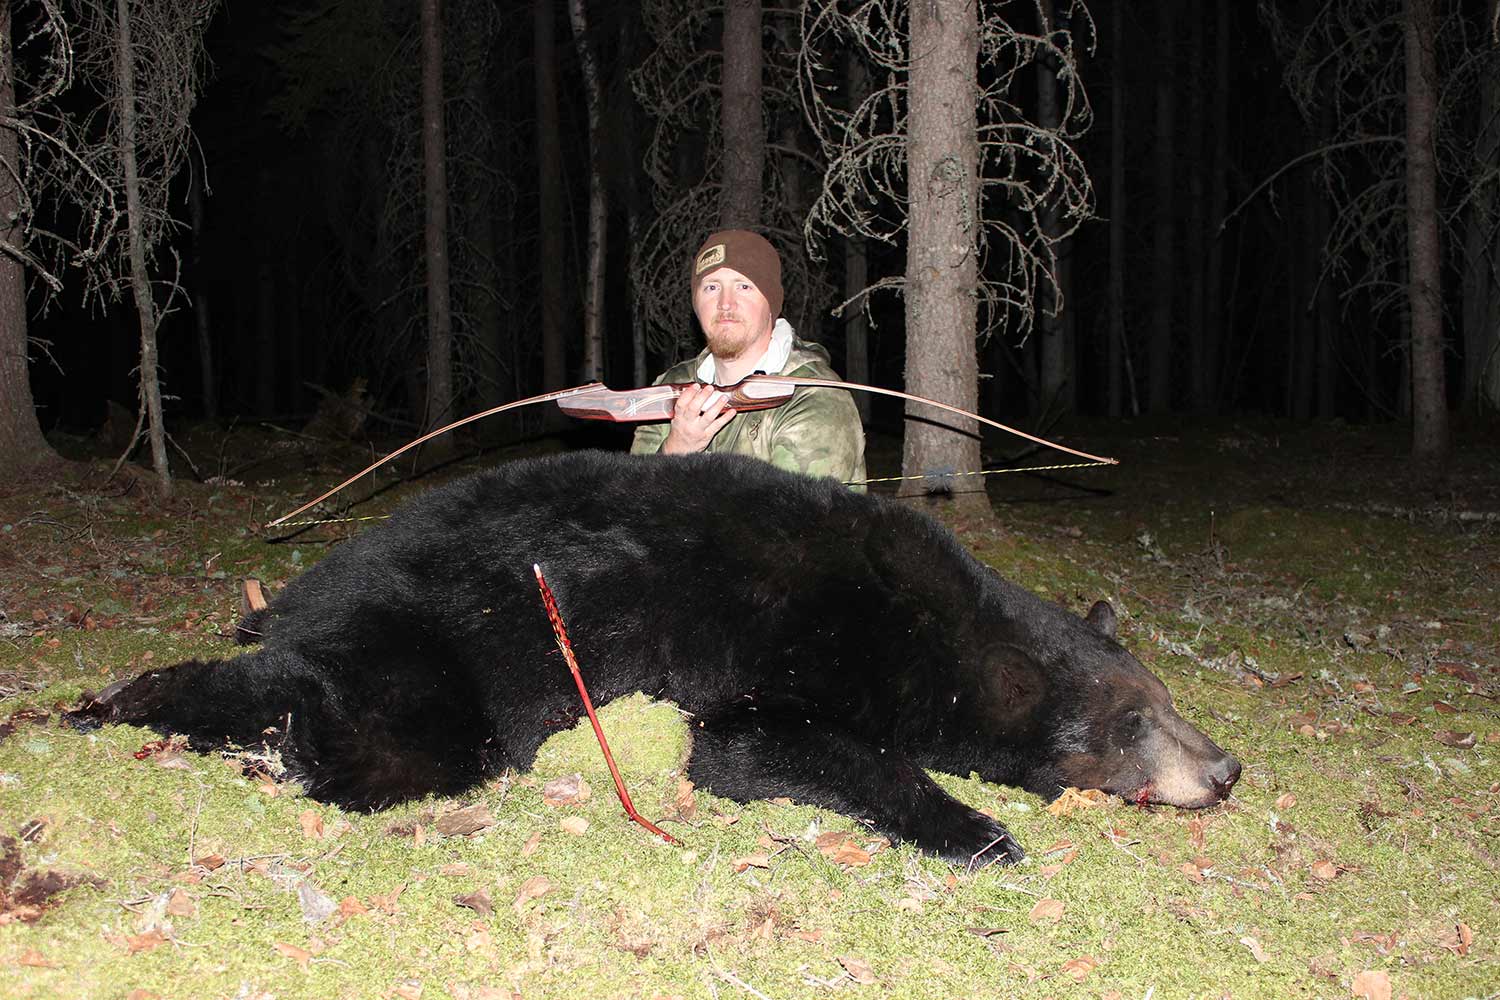 Tyler Freel kneeling behind a black bear.